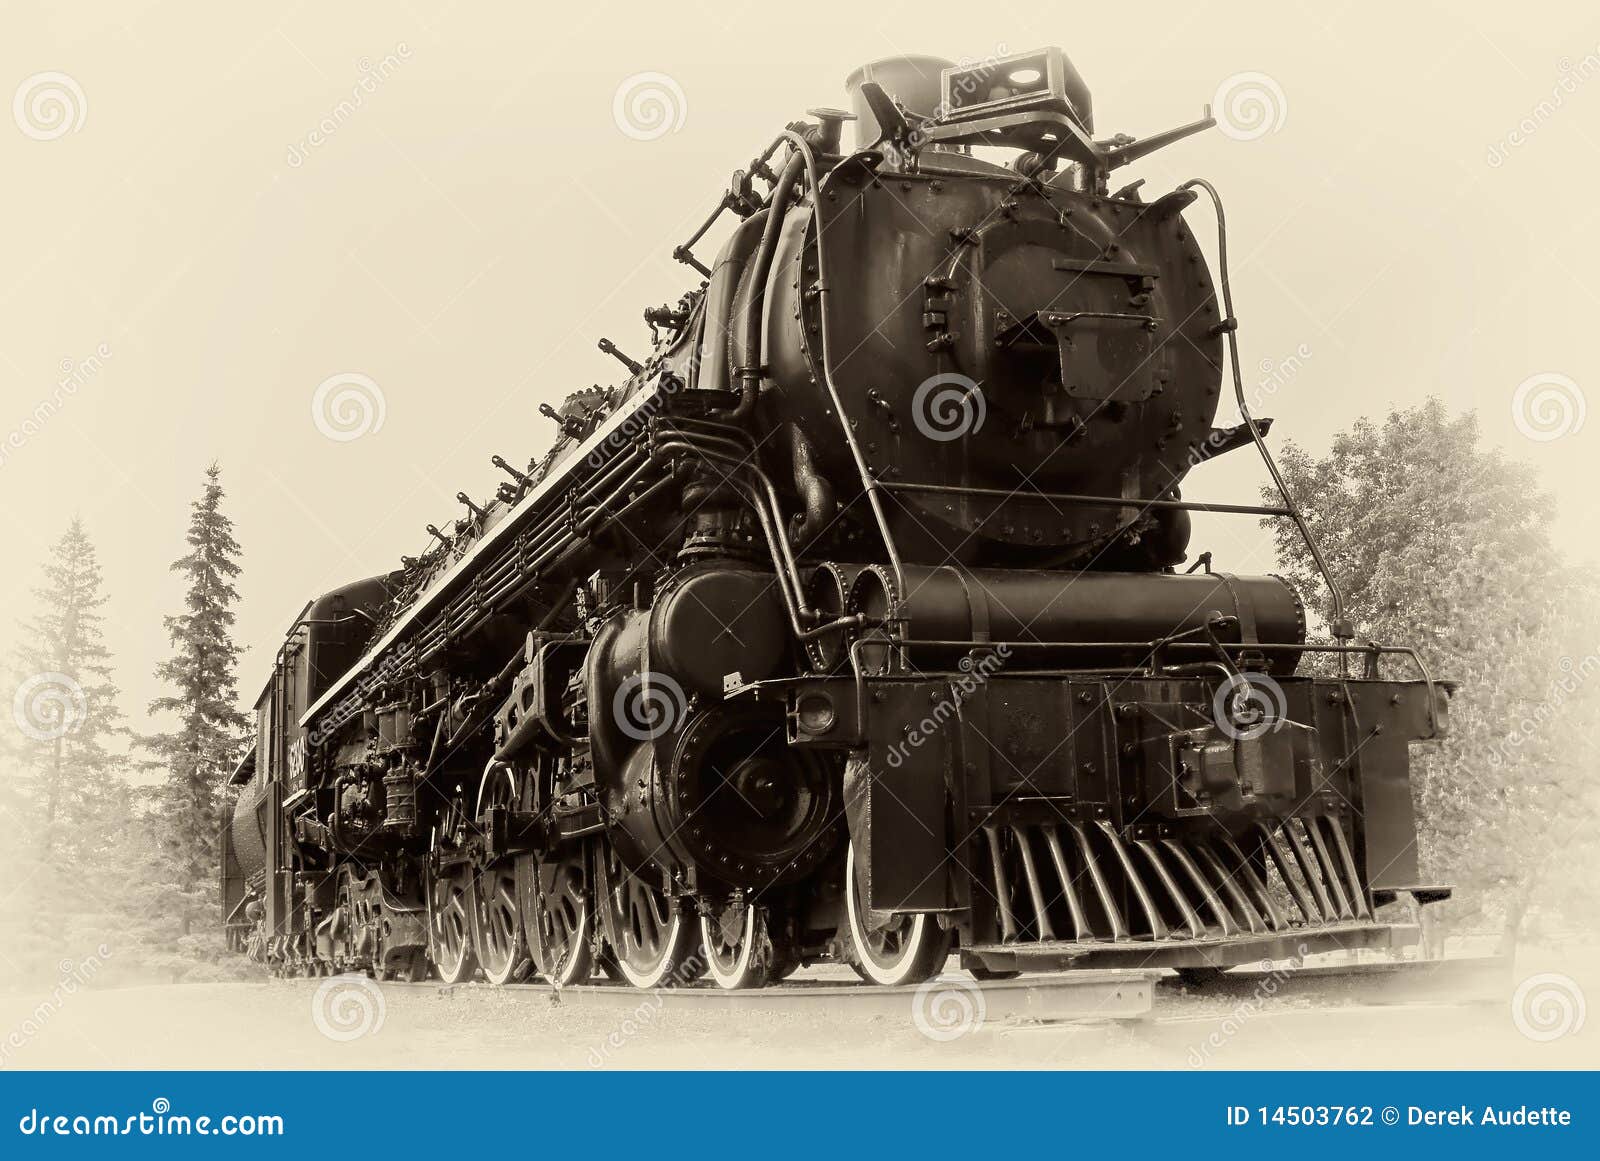 Vintage Steam Train 86